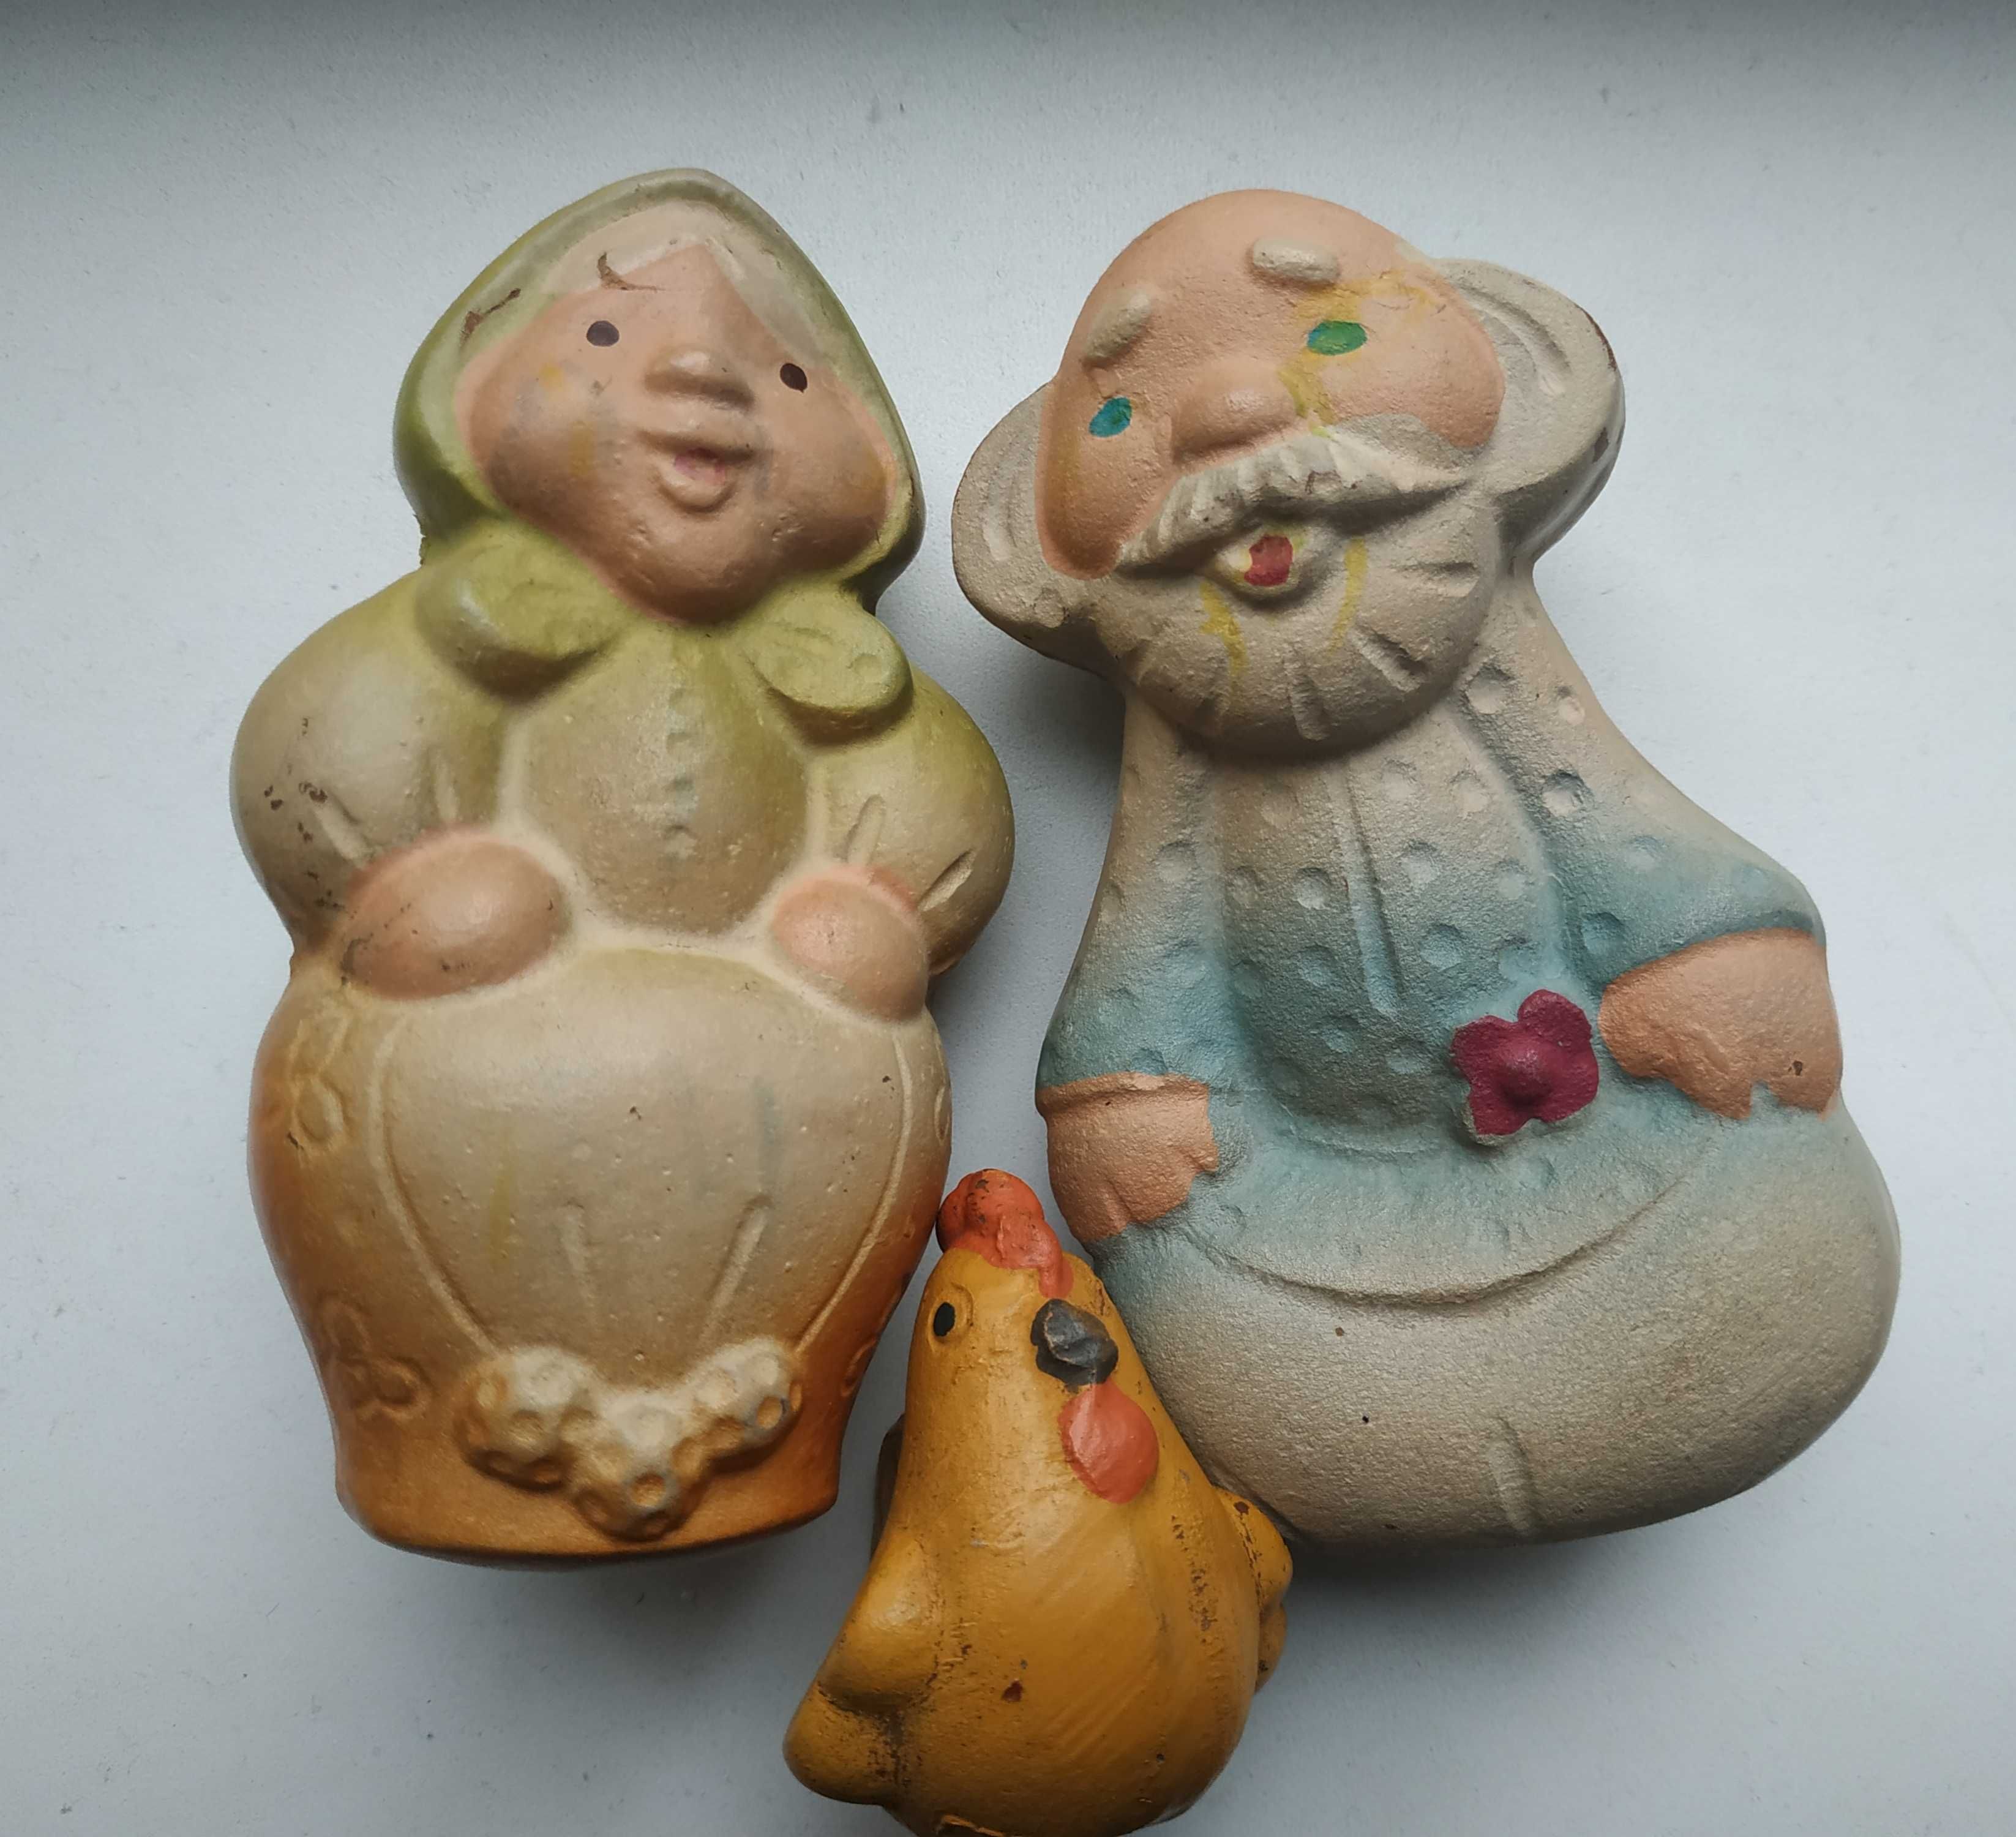 Игрушки  резиновые, старые  "Курочка РЯБА"  Набор, коллекция